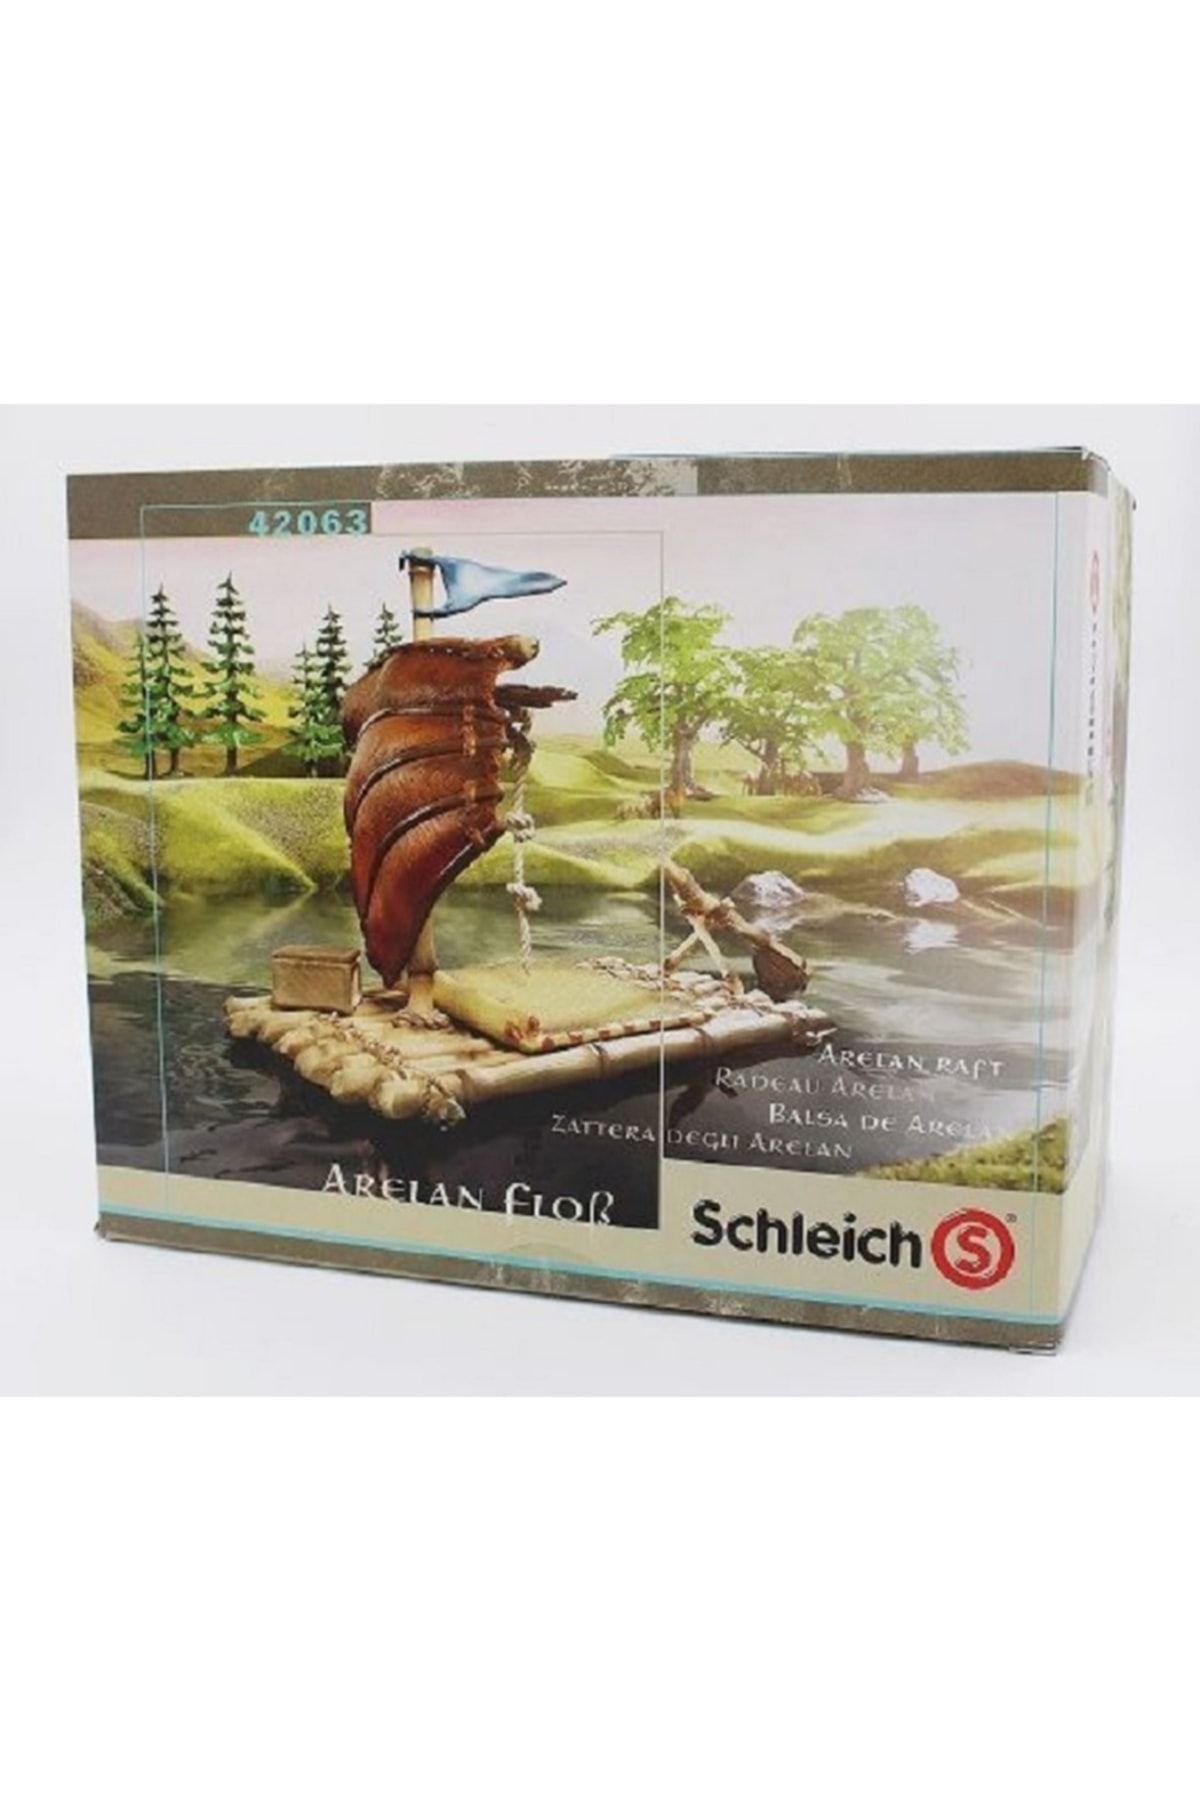 Schleich - Arelan Raft-limited Edition